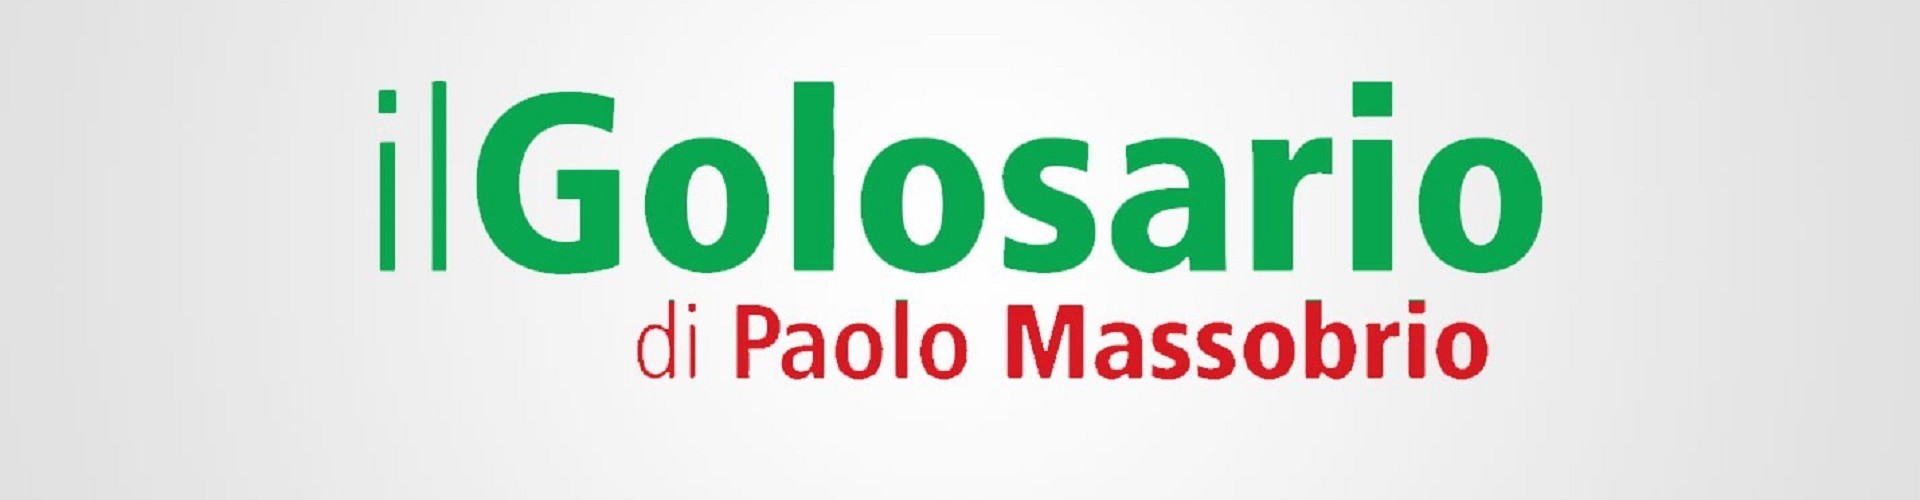 Il Golosario di Paolo Massobrio parla di noi